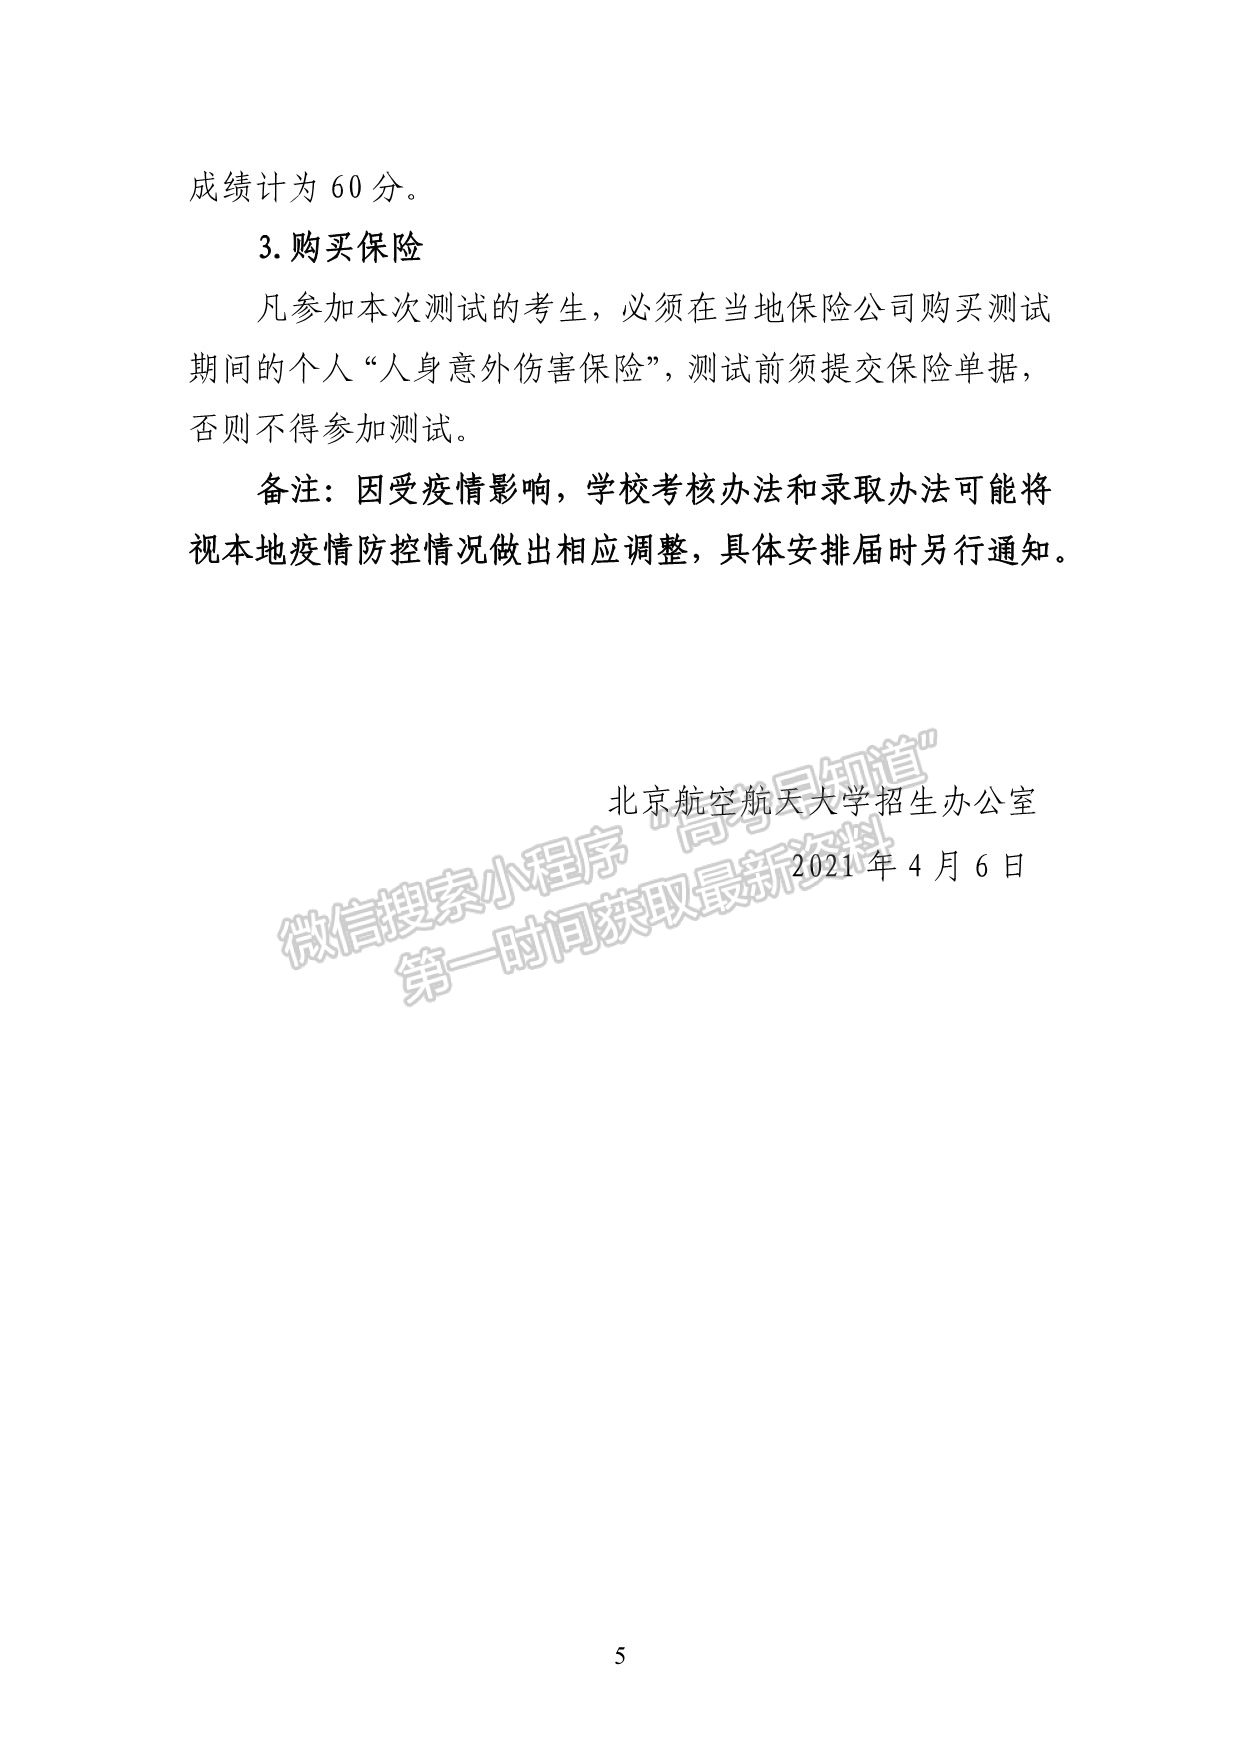 北京航空航天大学2021年强基计划招生简章